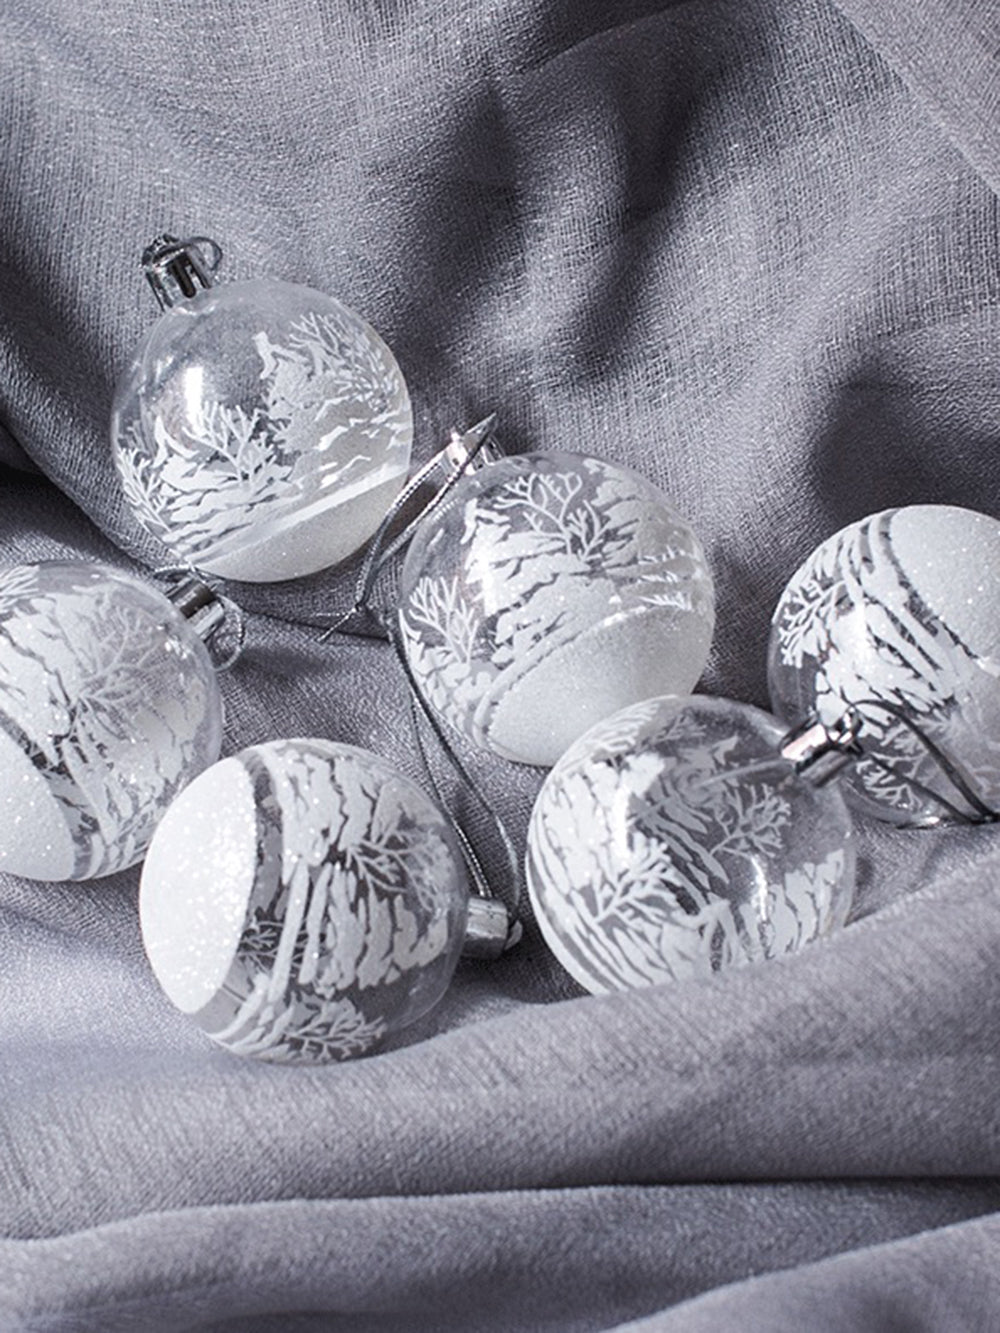 6 件装透明球窗圣诞树装饰挂件